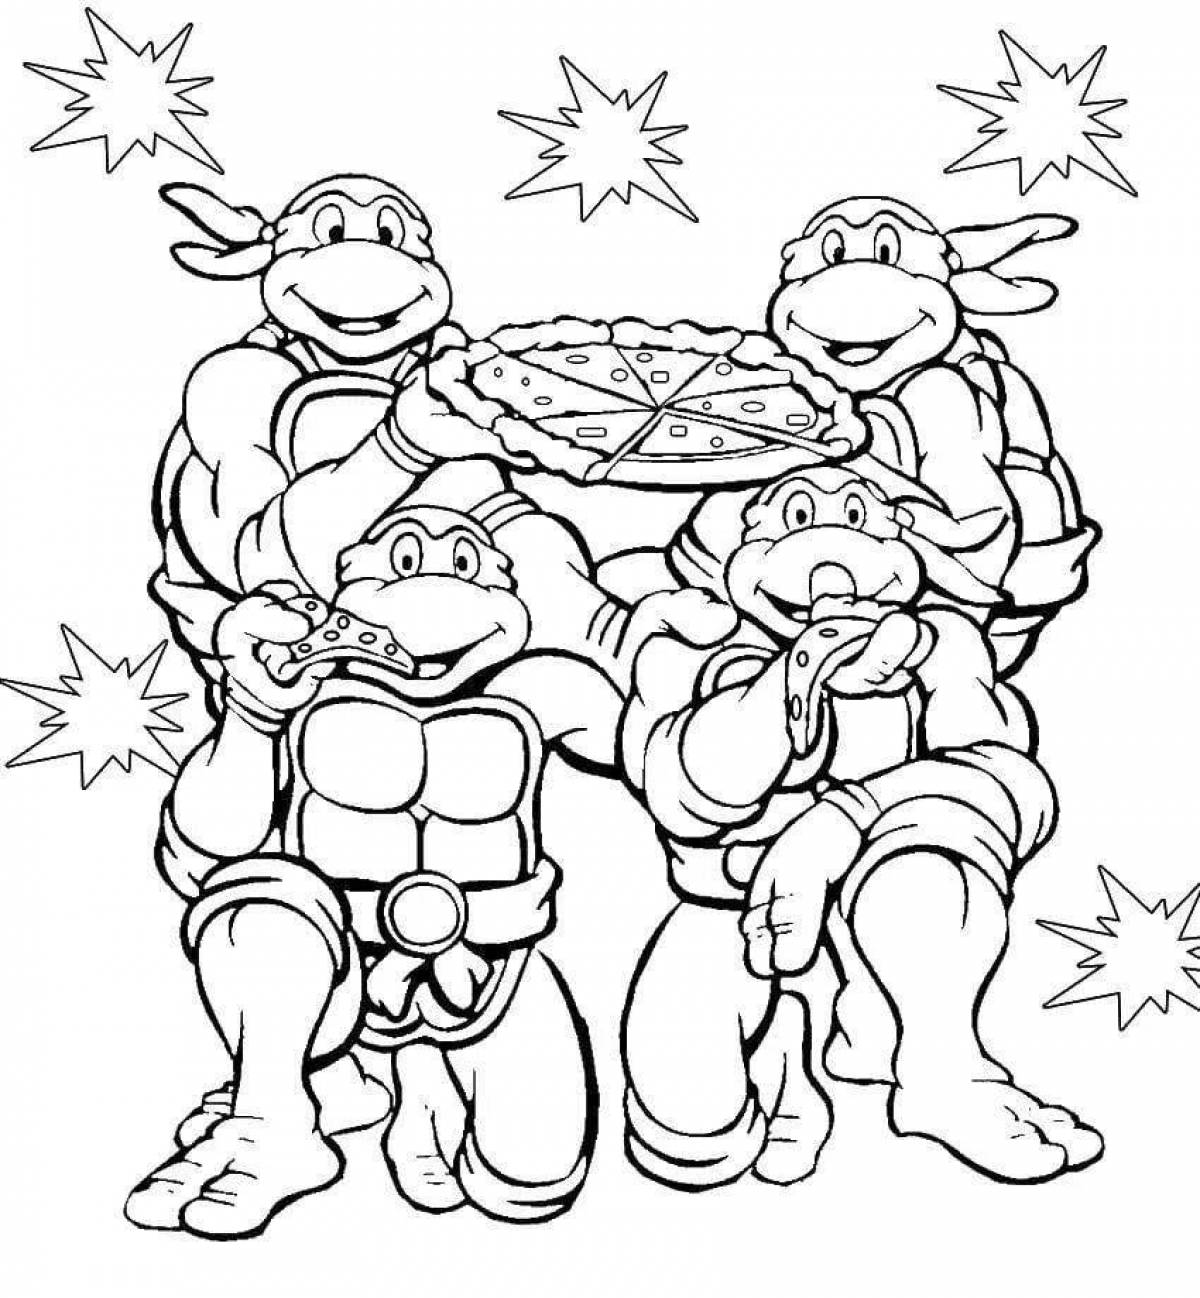 Teenage Mutant Ninja Turtles coloring #2